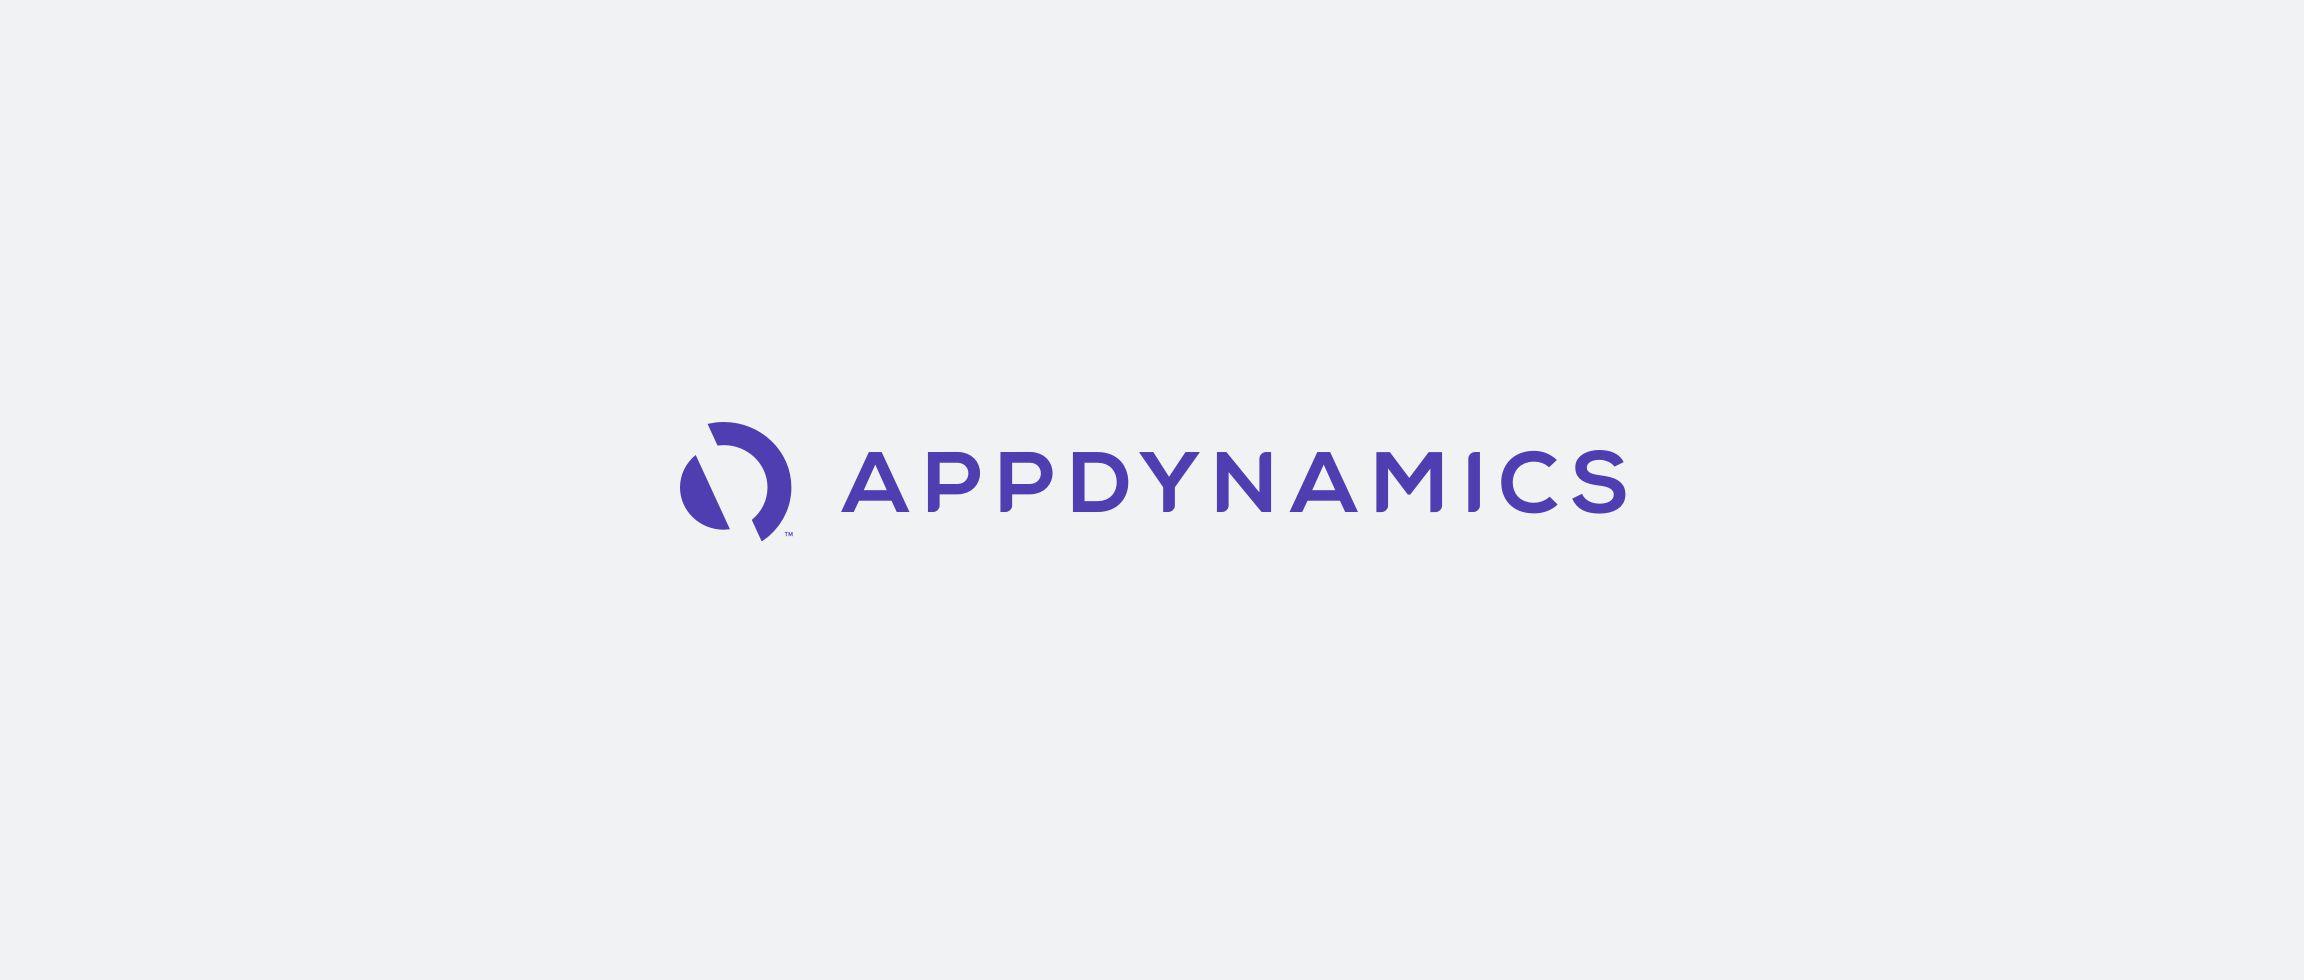 AppDynamics Logo - Kallan & Co